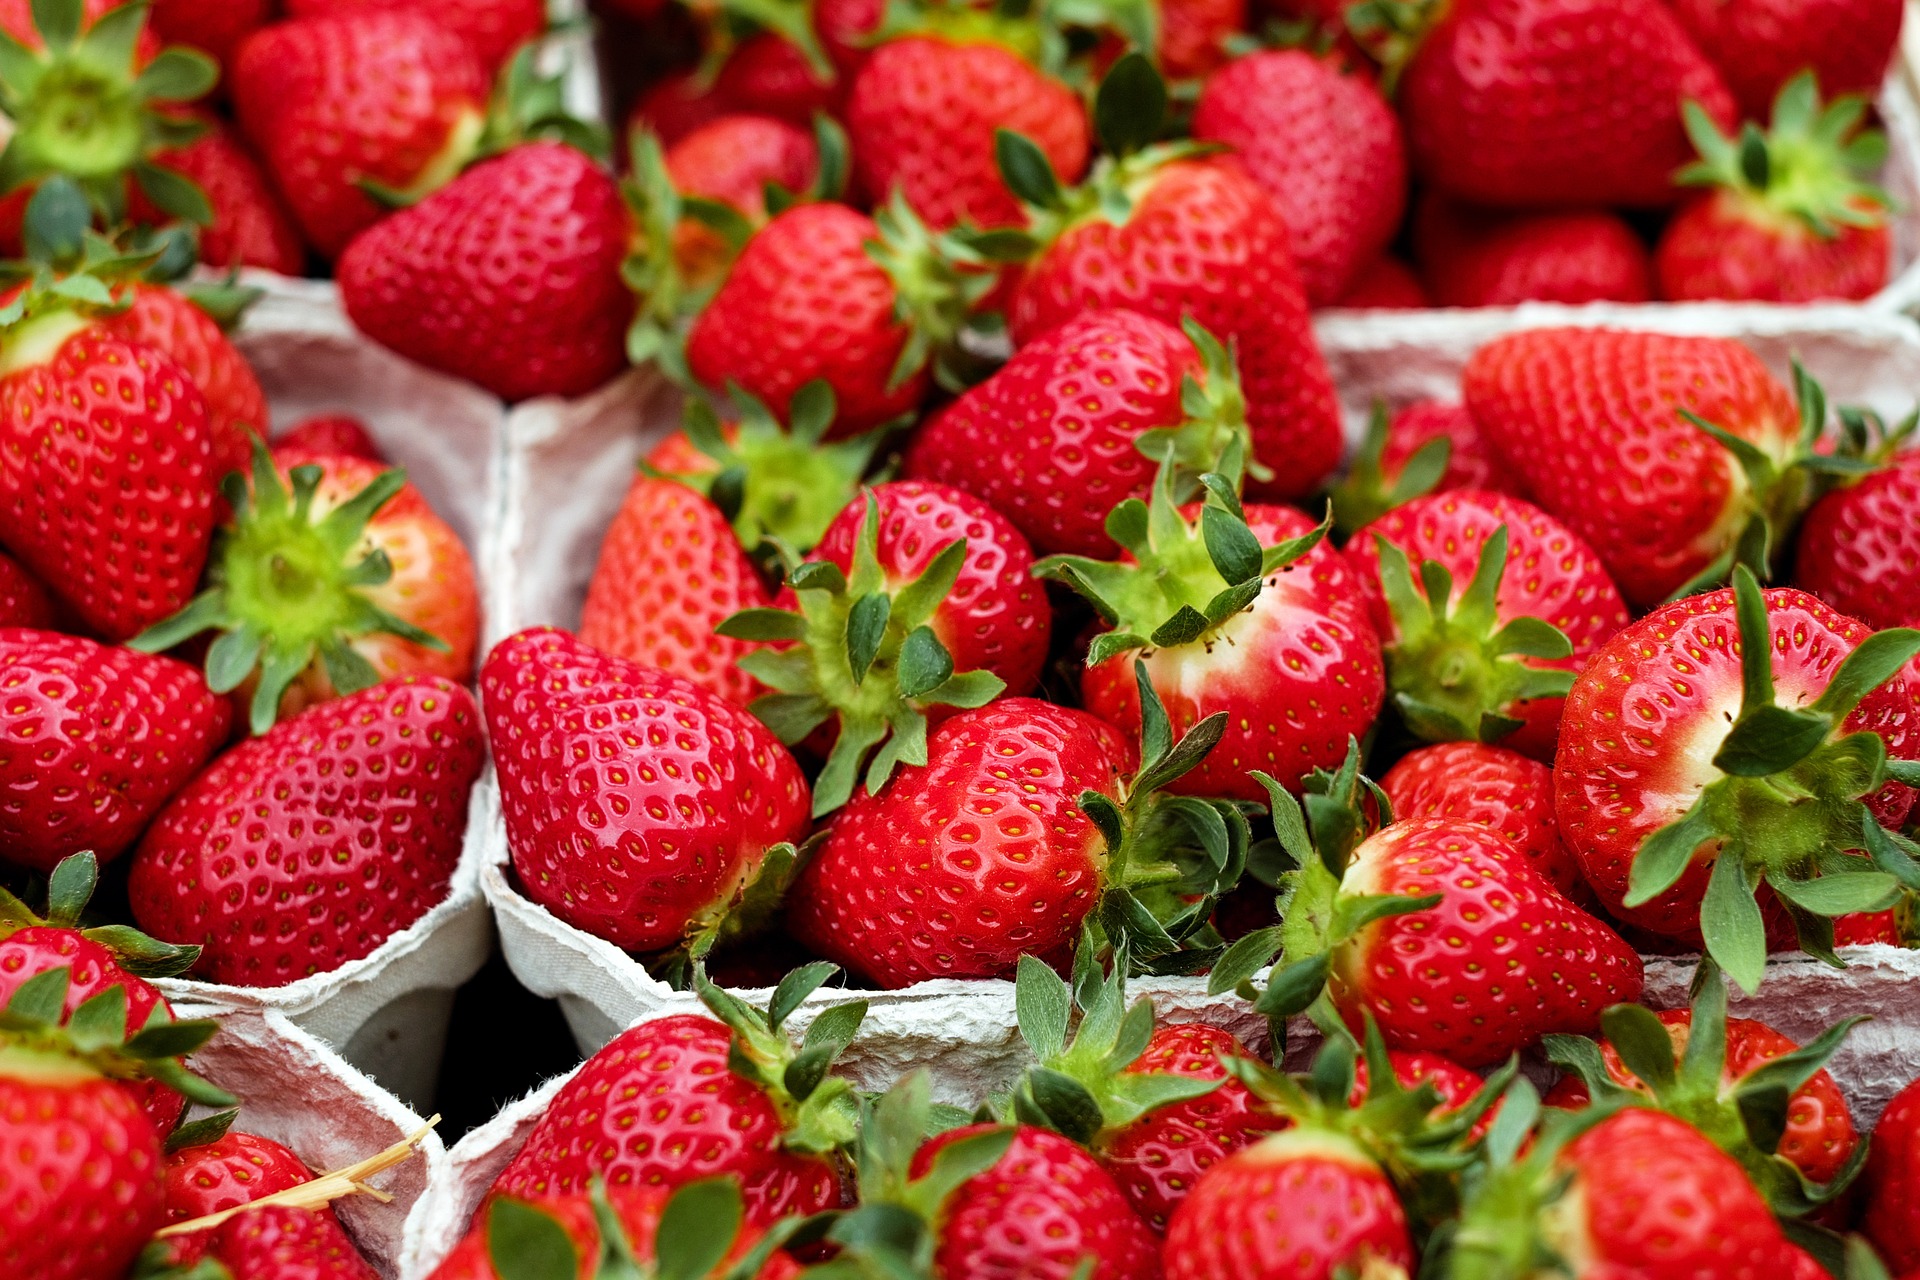 strawberries-1396330_1920.jpg